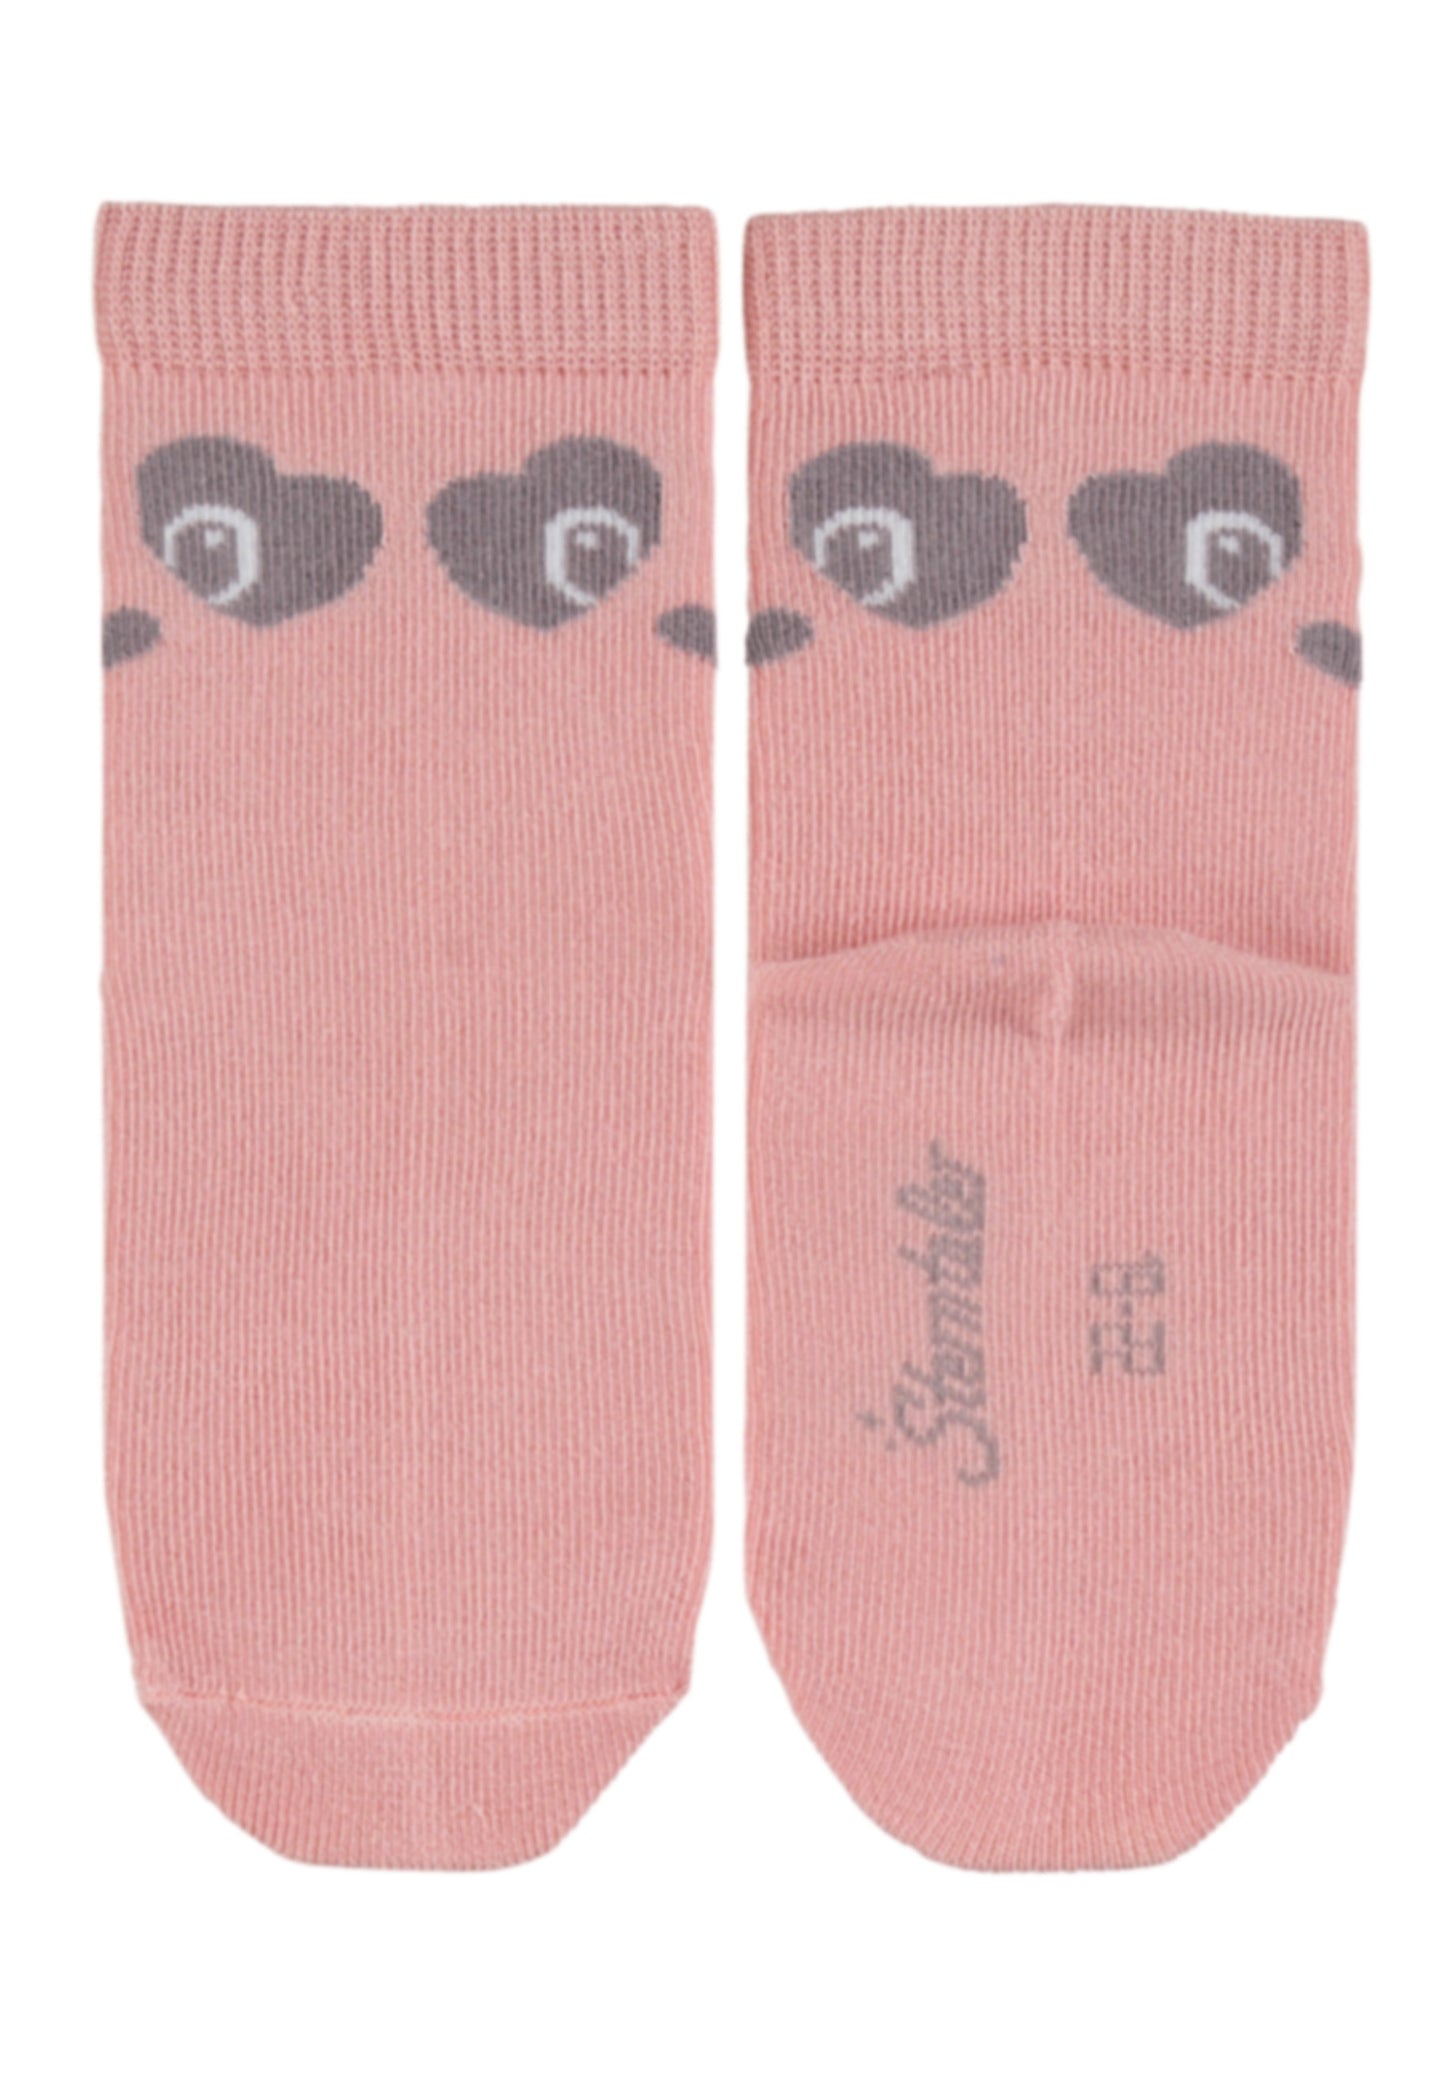 Socken Panda, 3er-Pack